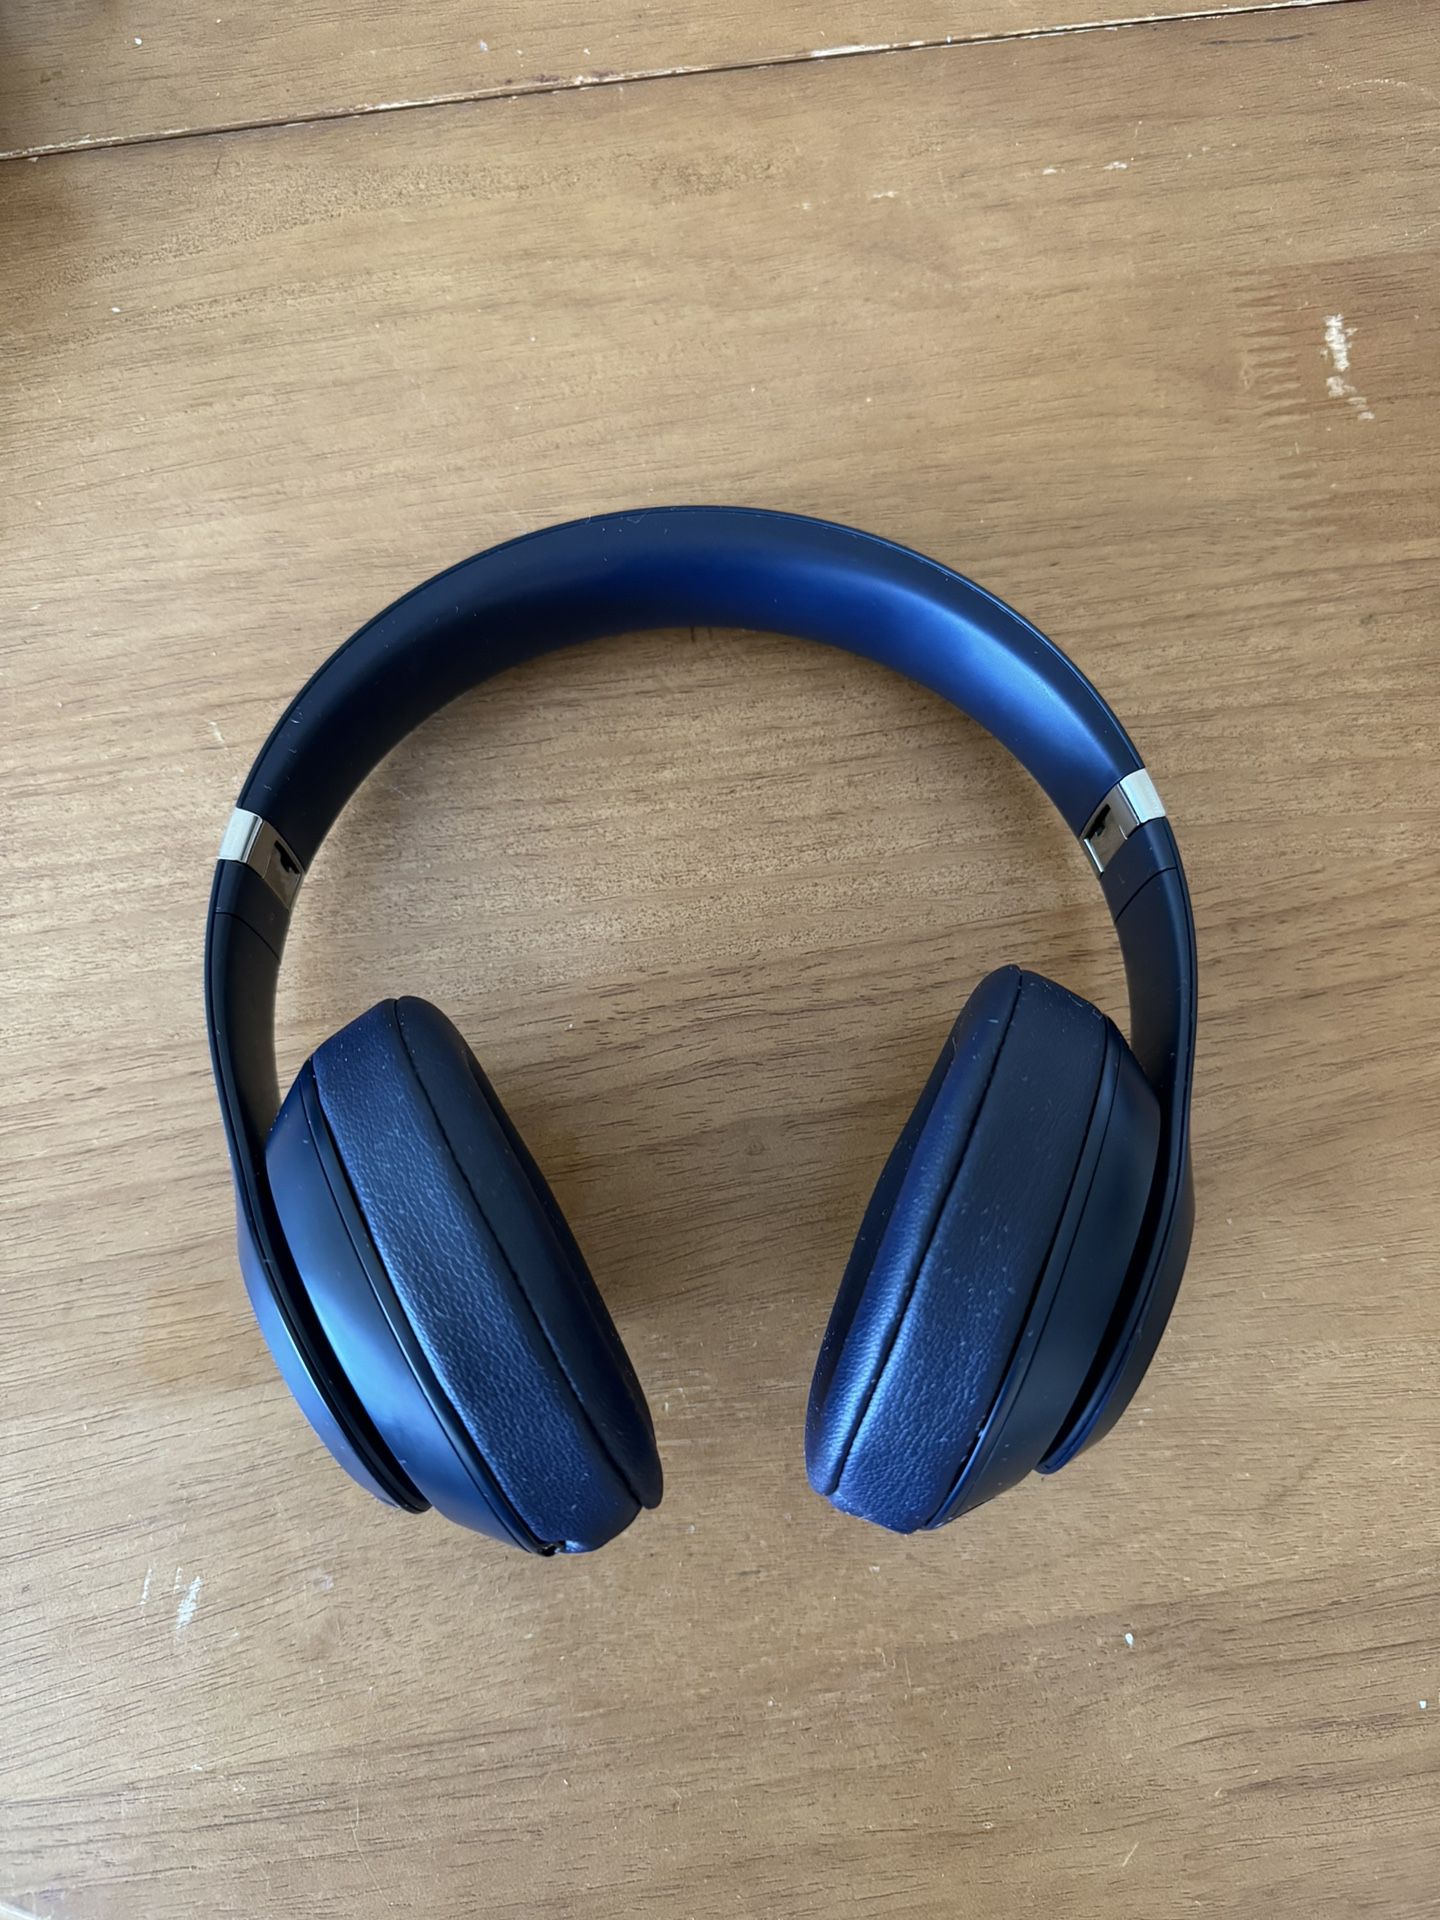 Beats Studio 3 Headphones 